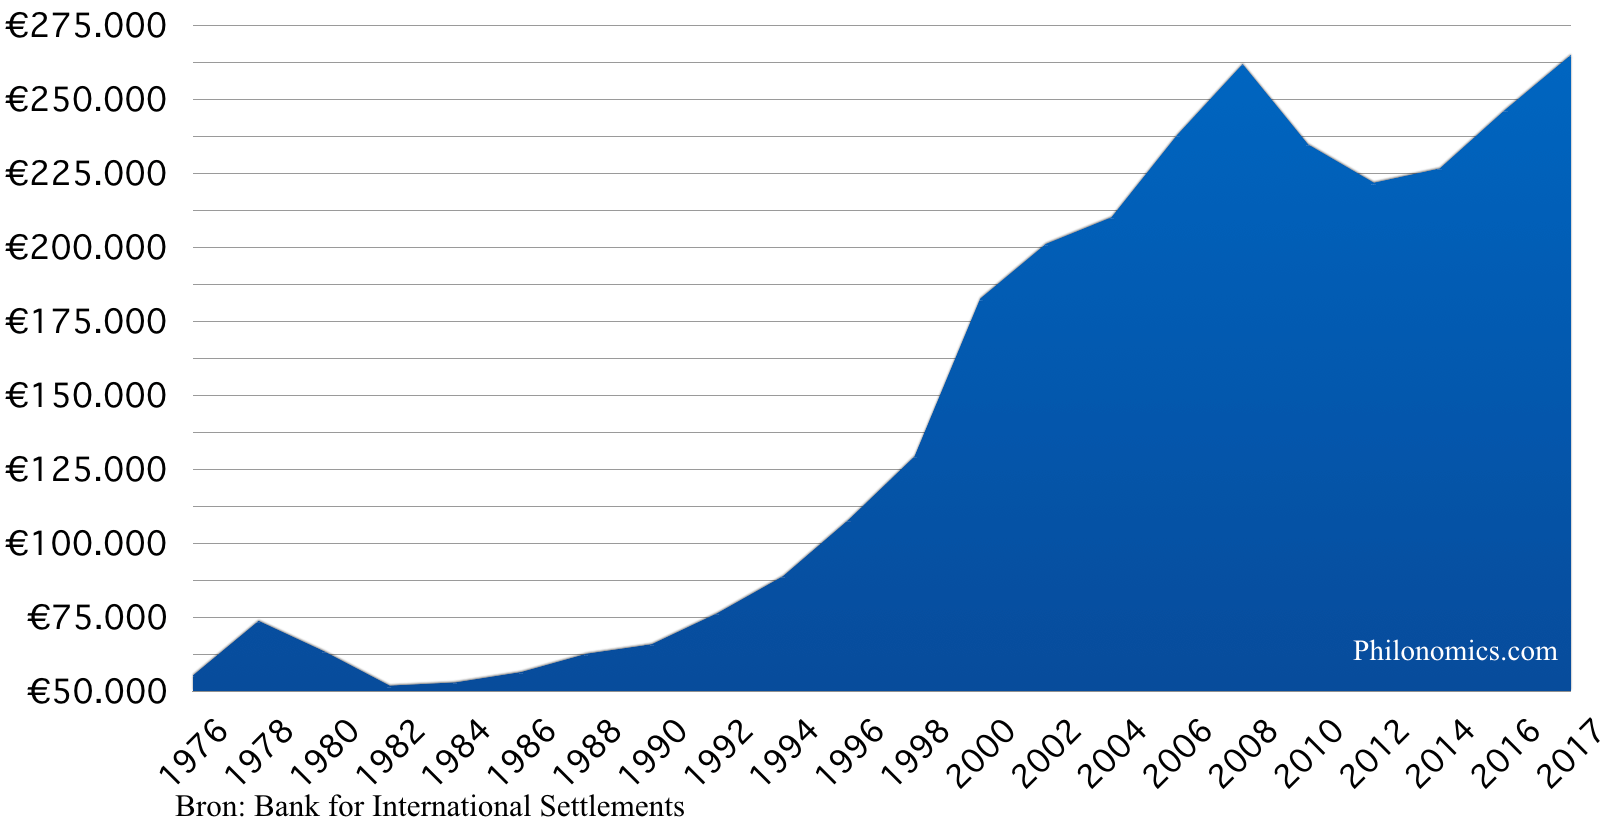 Historische Nederlandse huizenprijs 1975-2017